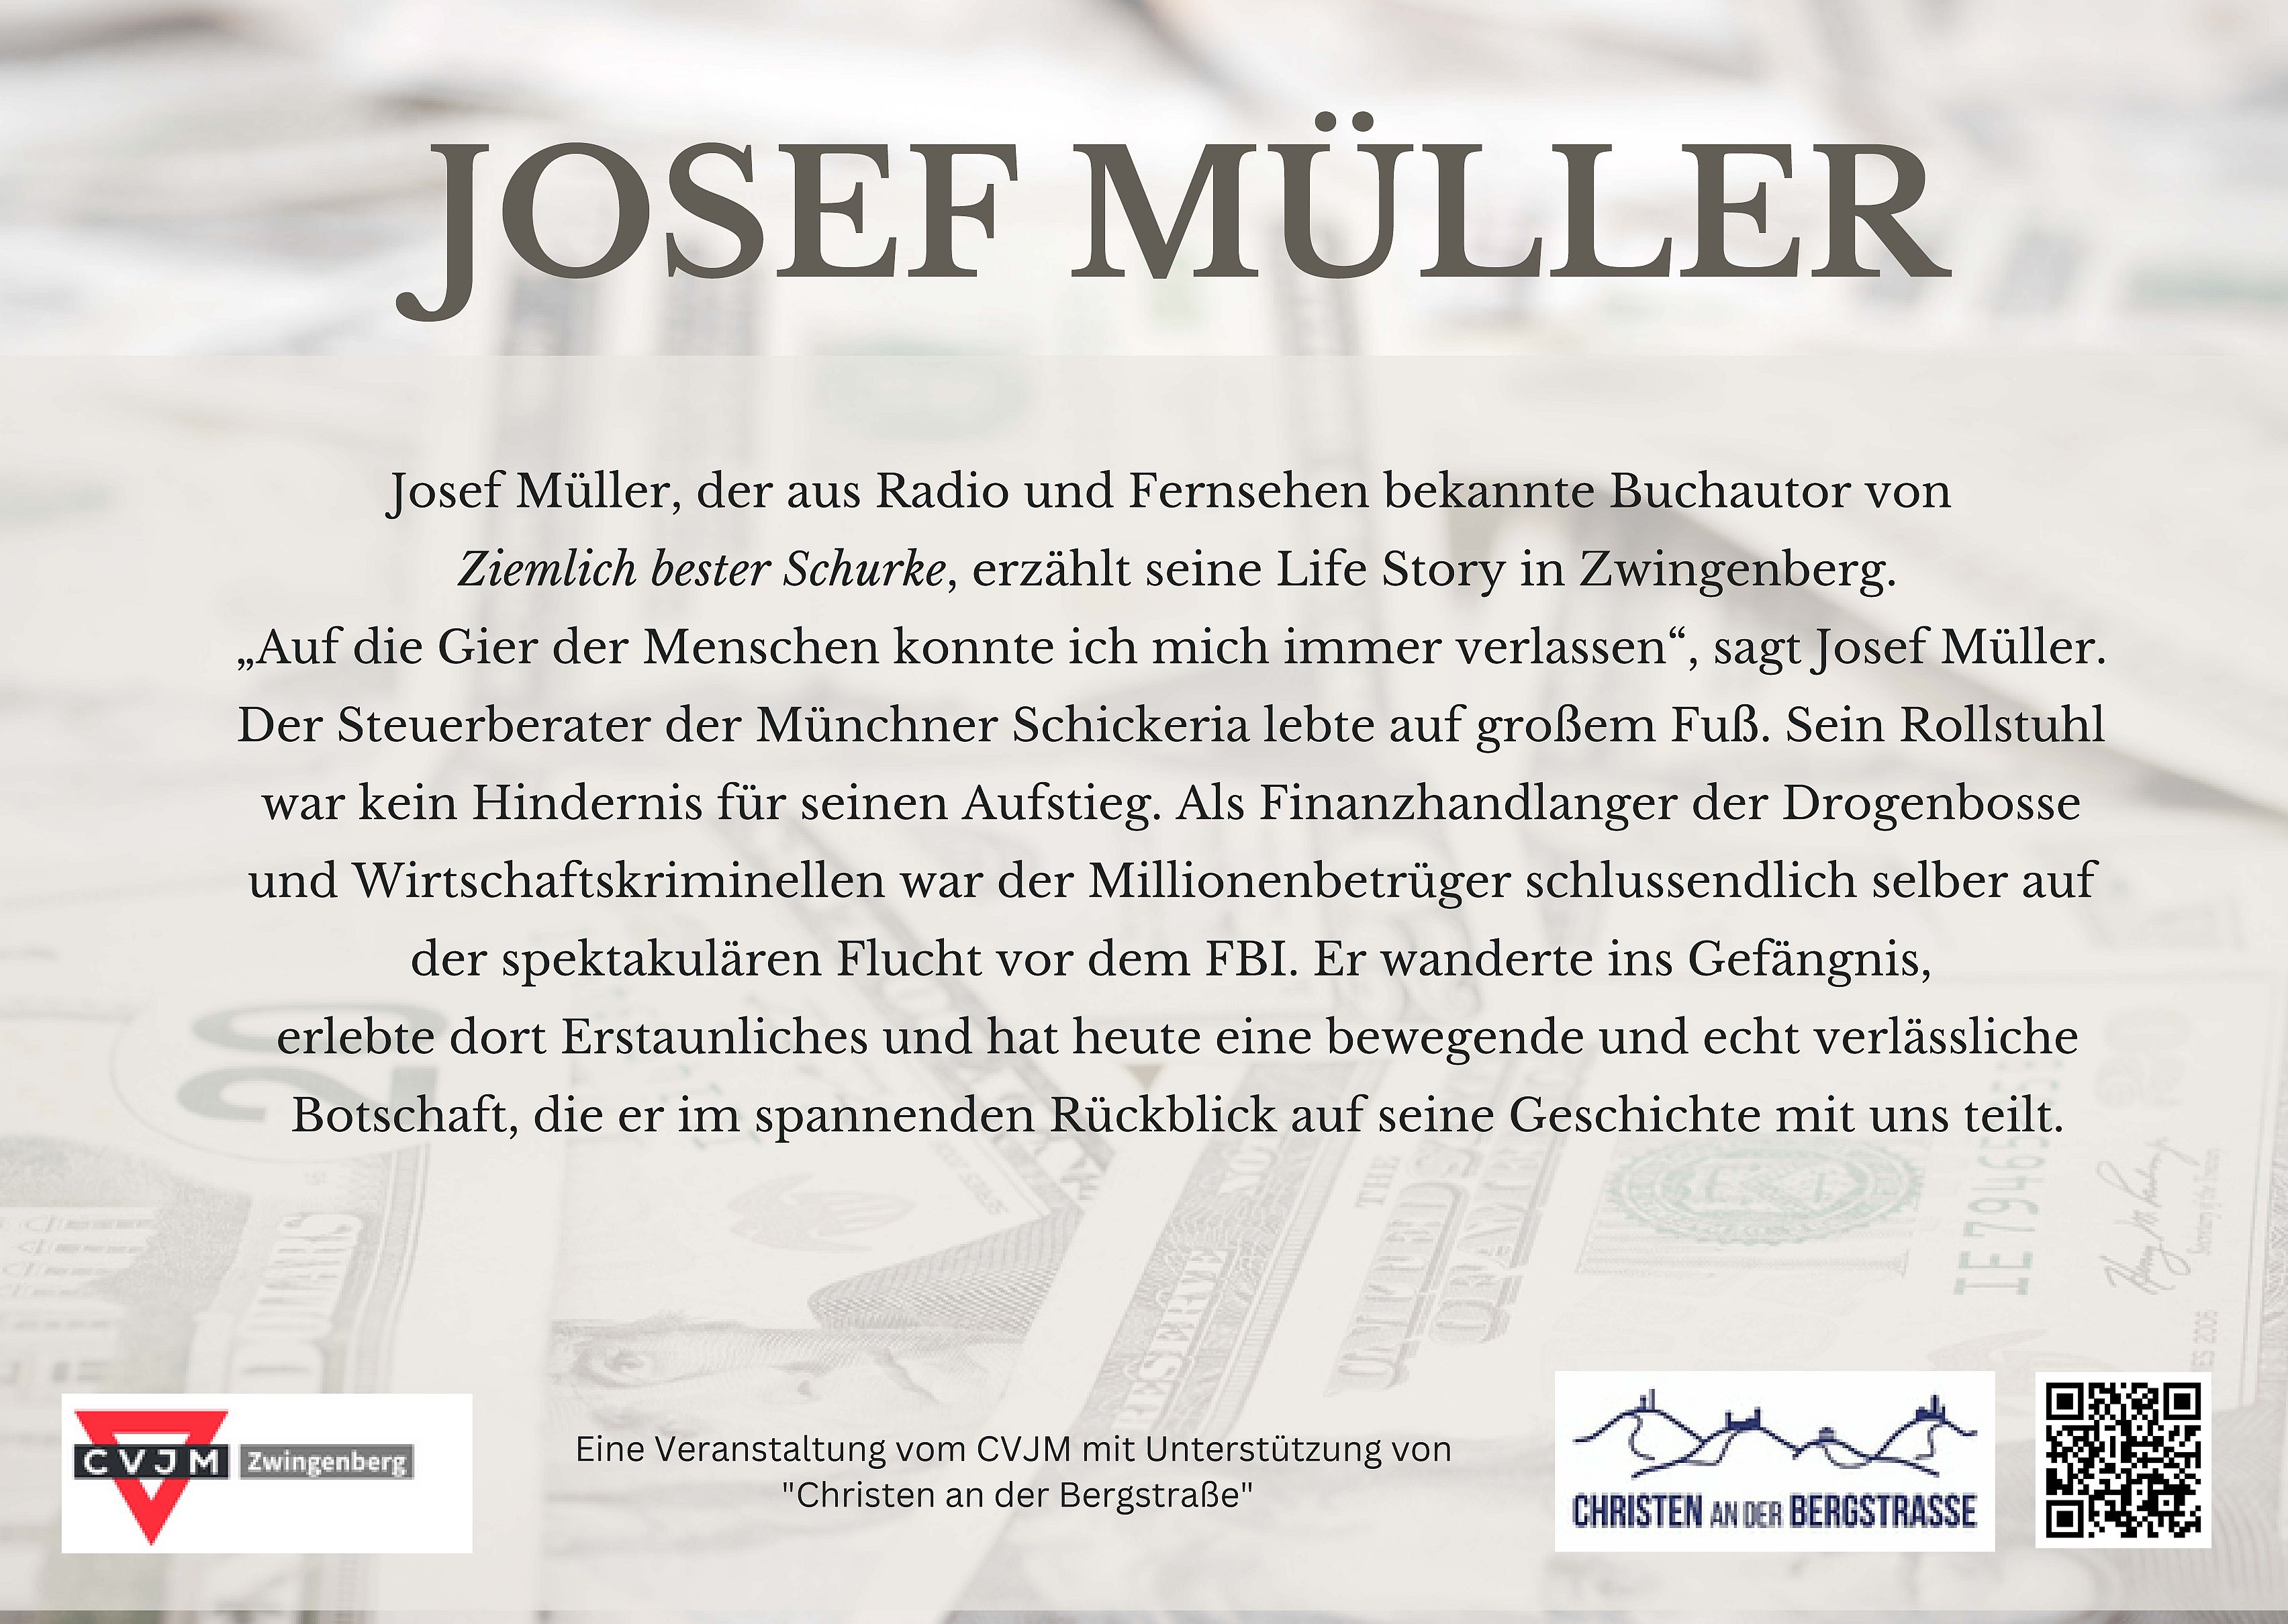 Josef Müller von FBI gejagt, von Gott gefunden - Text